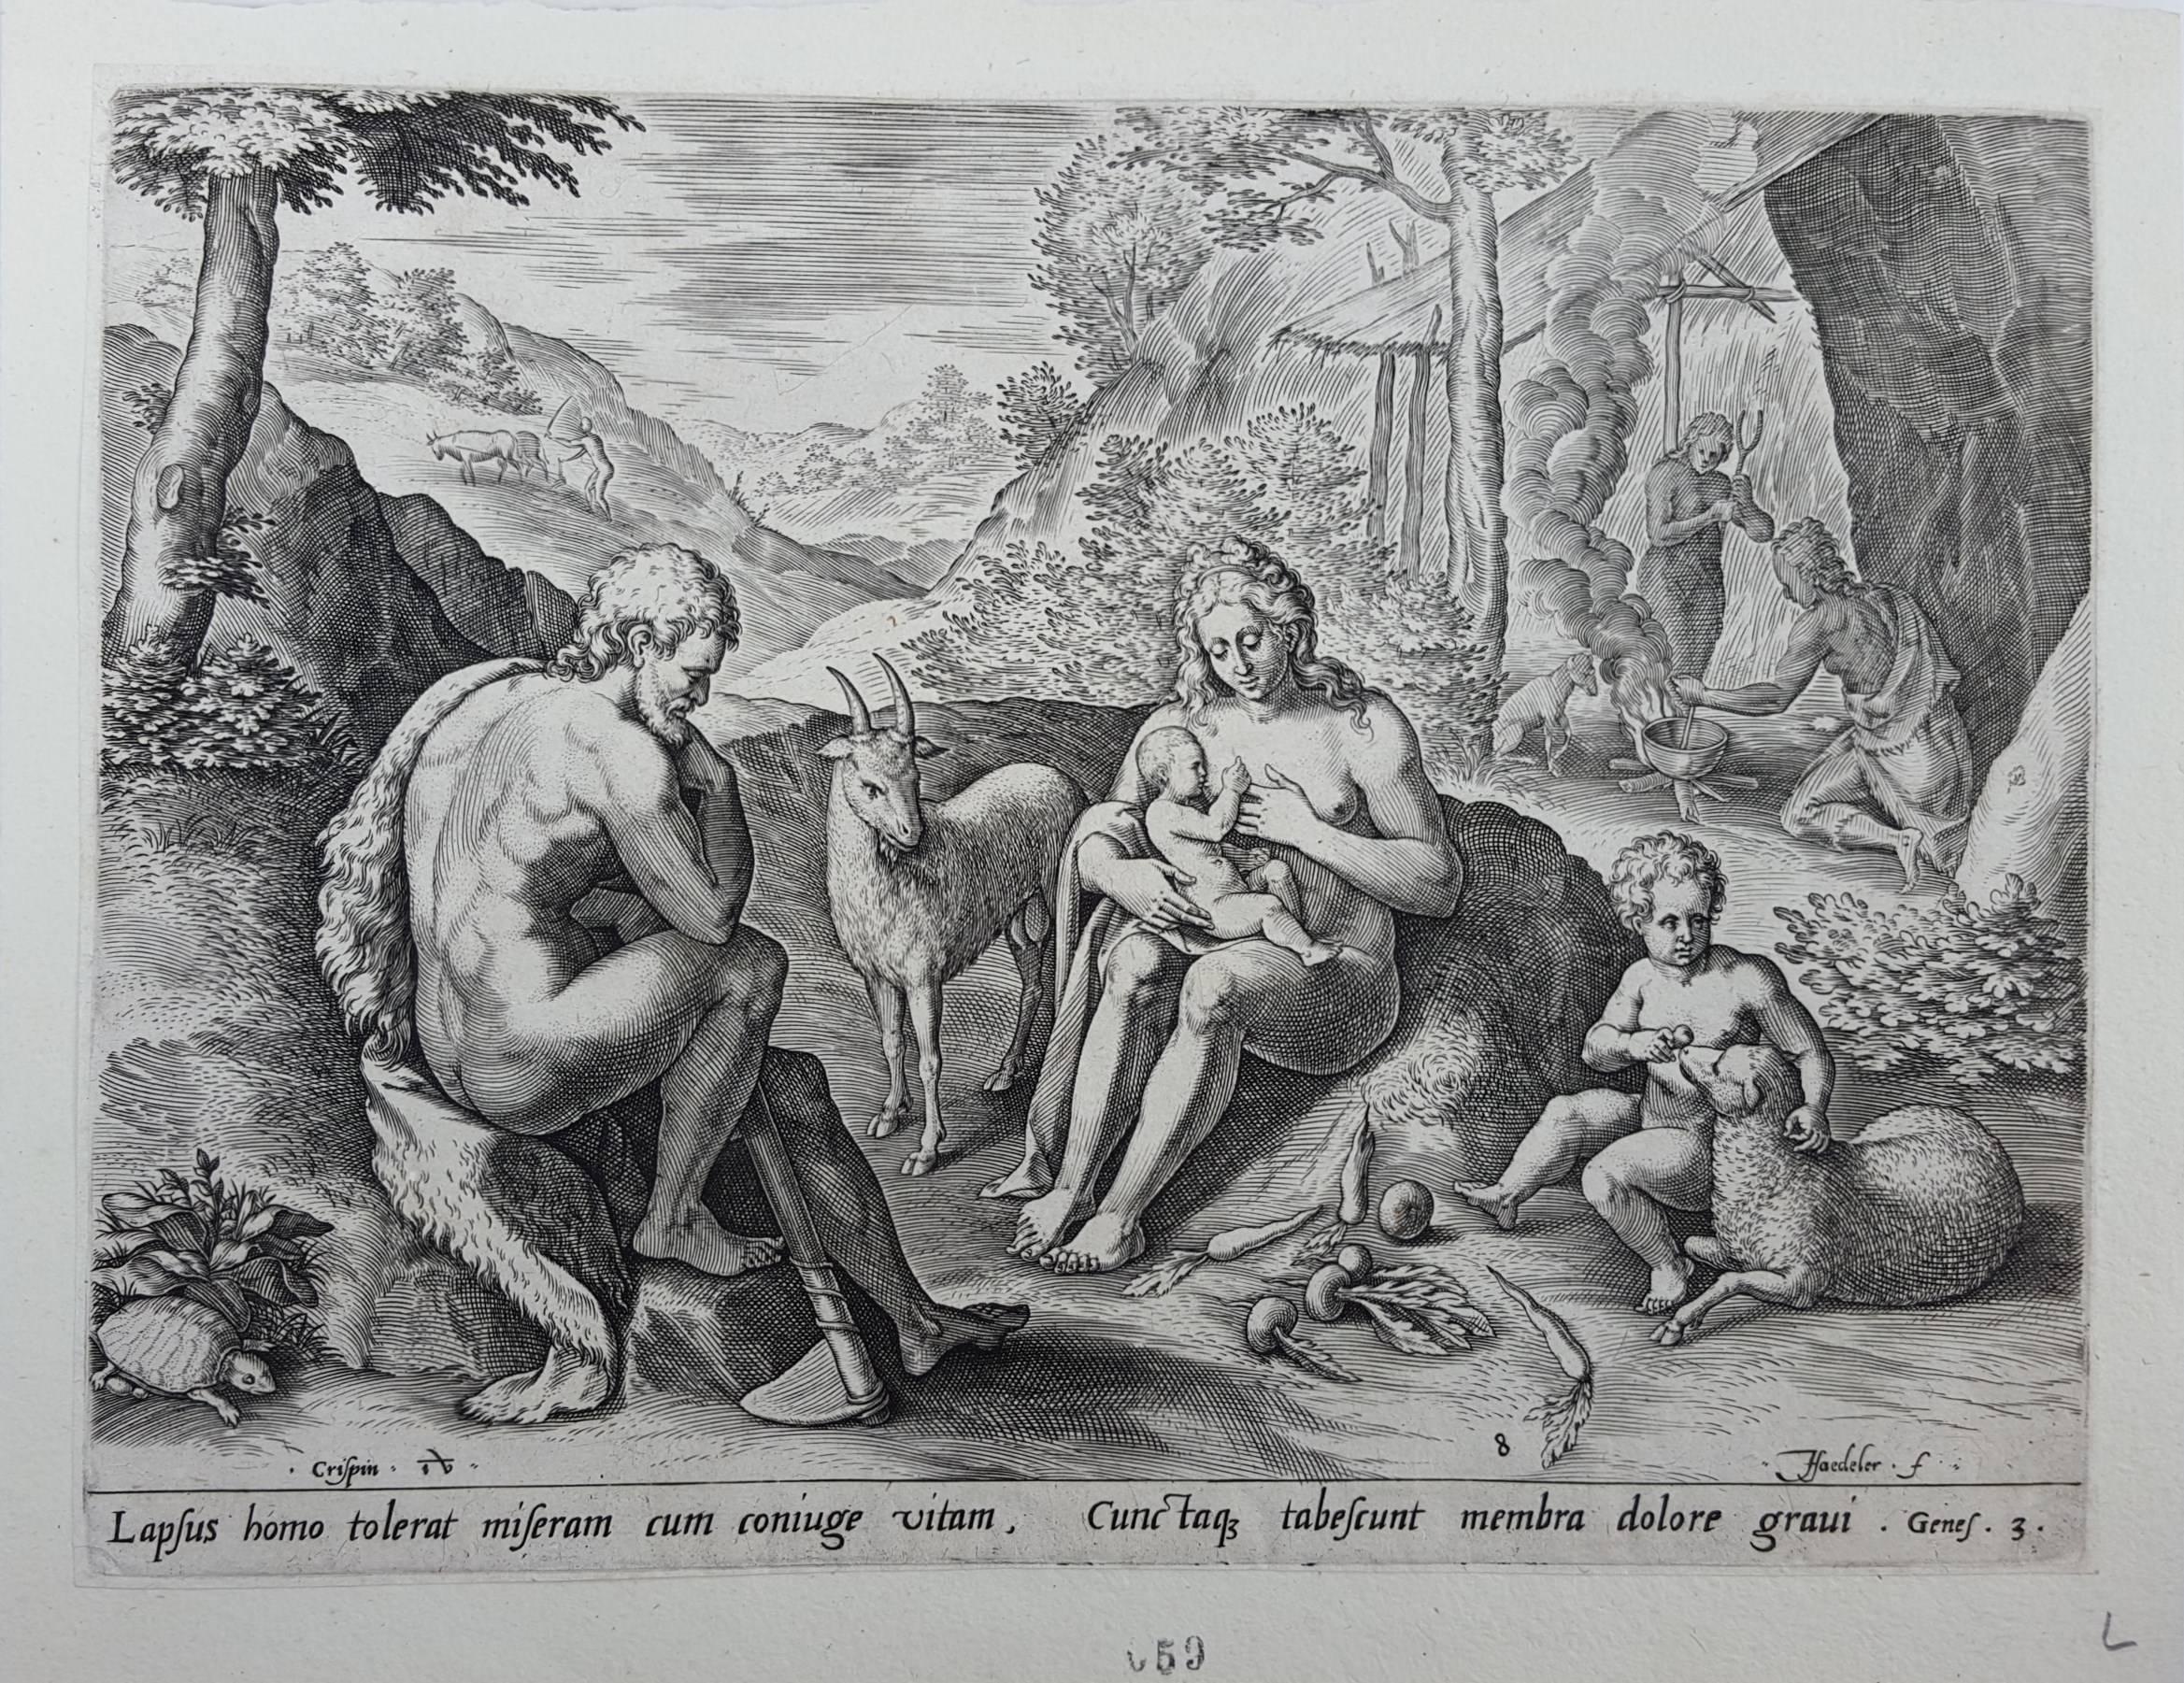 Lapsus homo tolerant miseram cum coniuge vitam - Print by Johannes Sadeler I